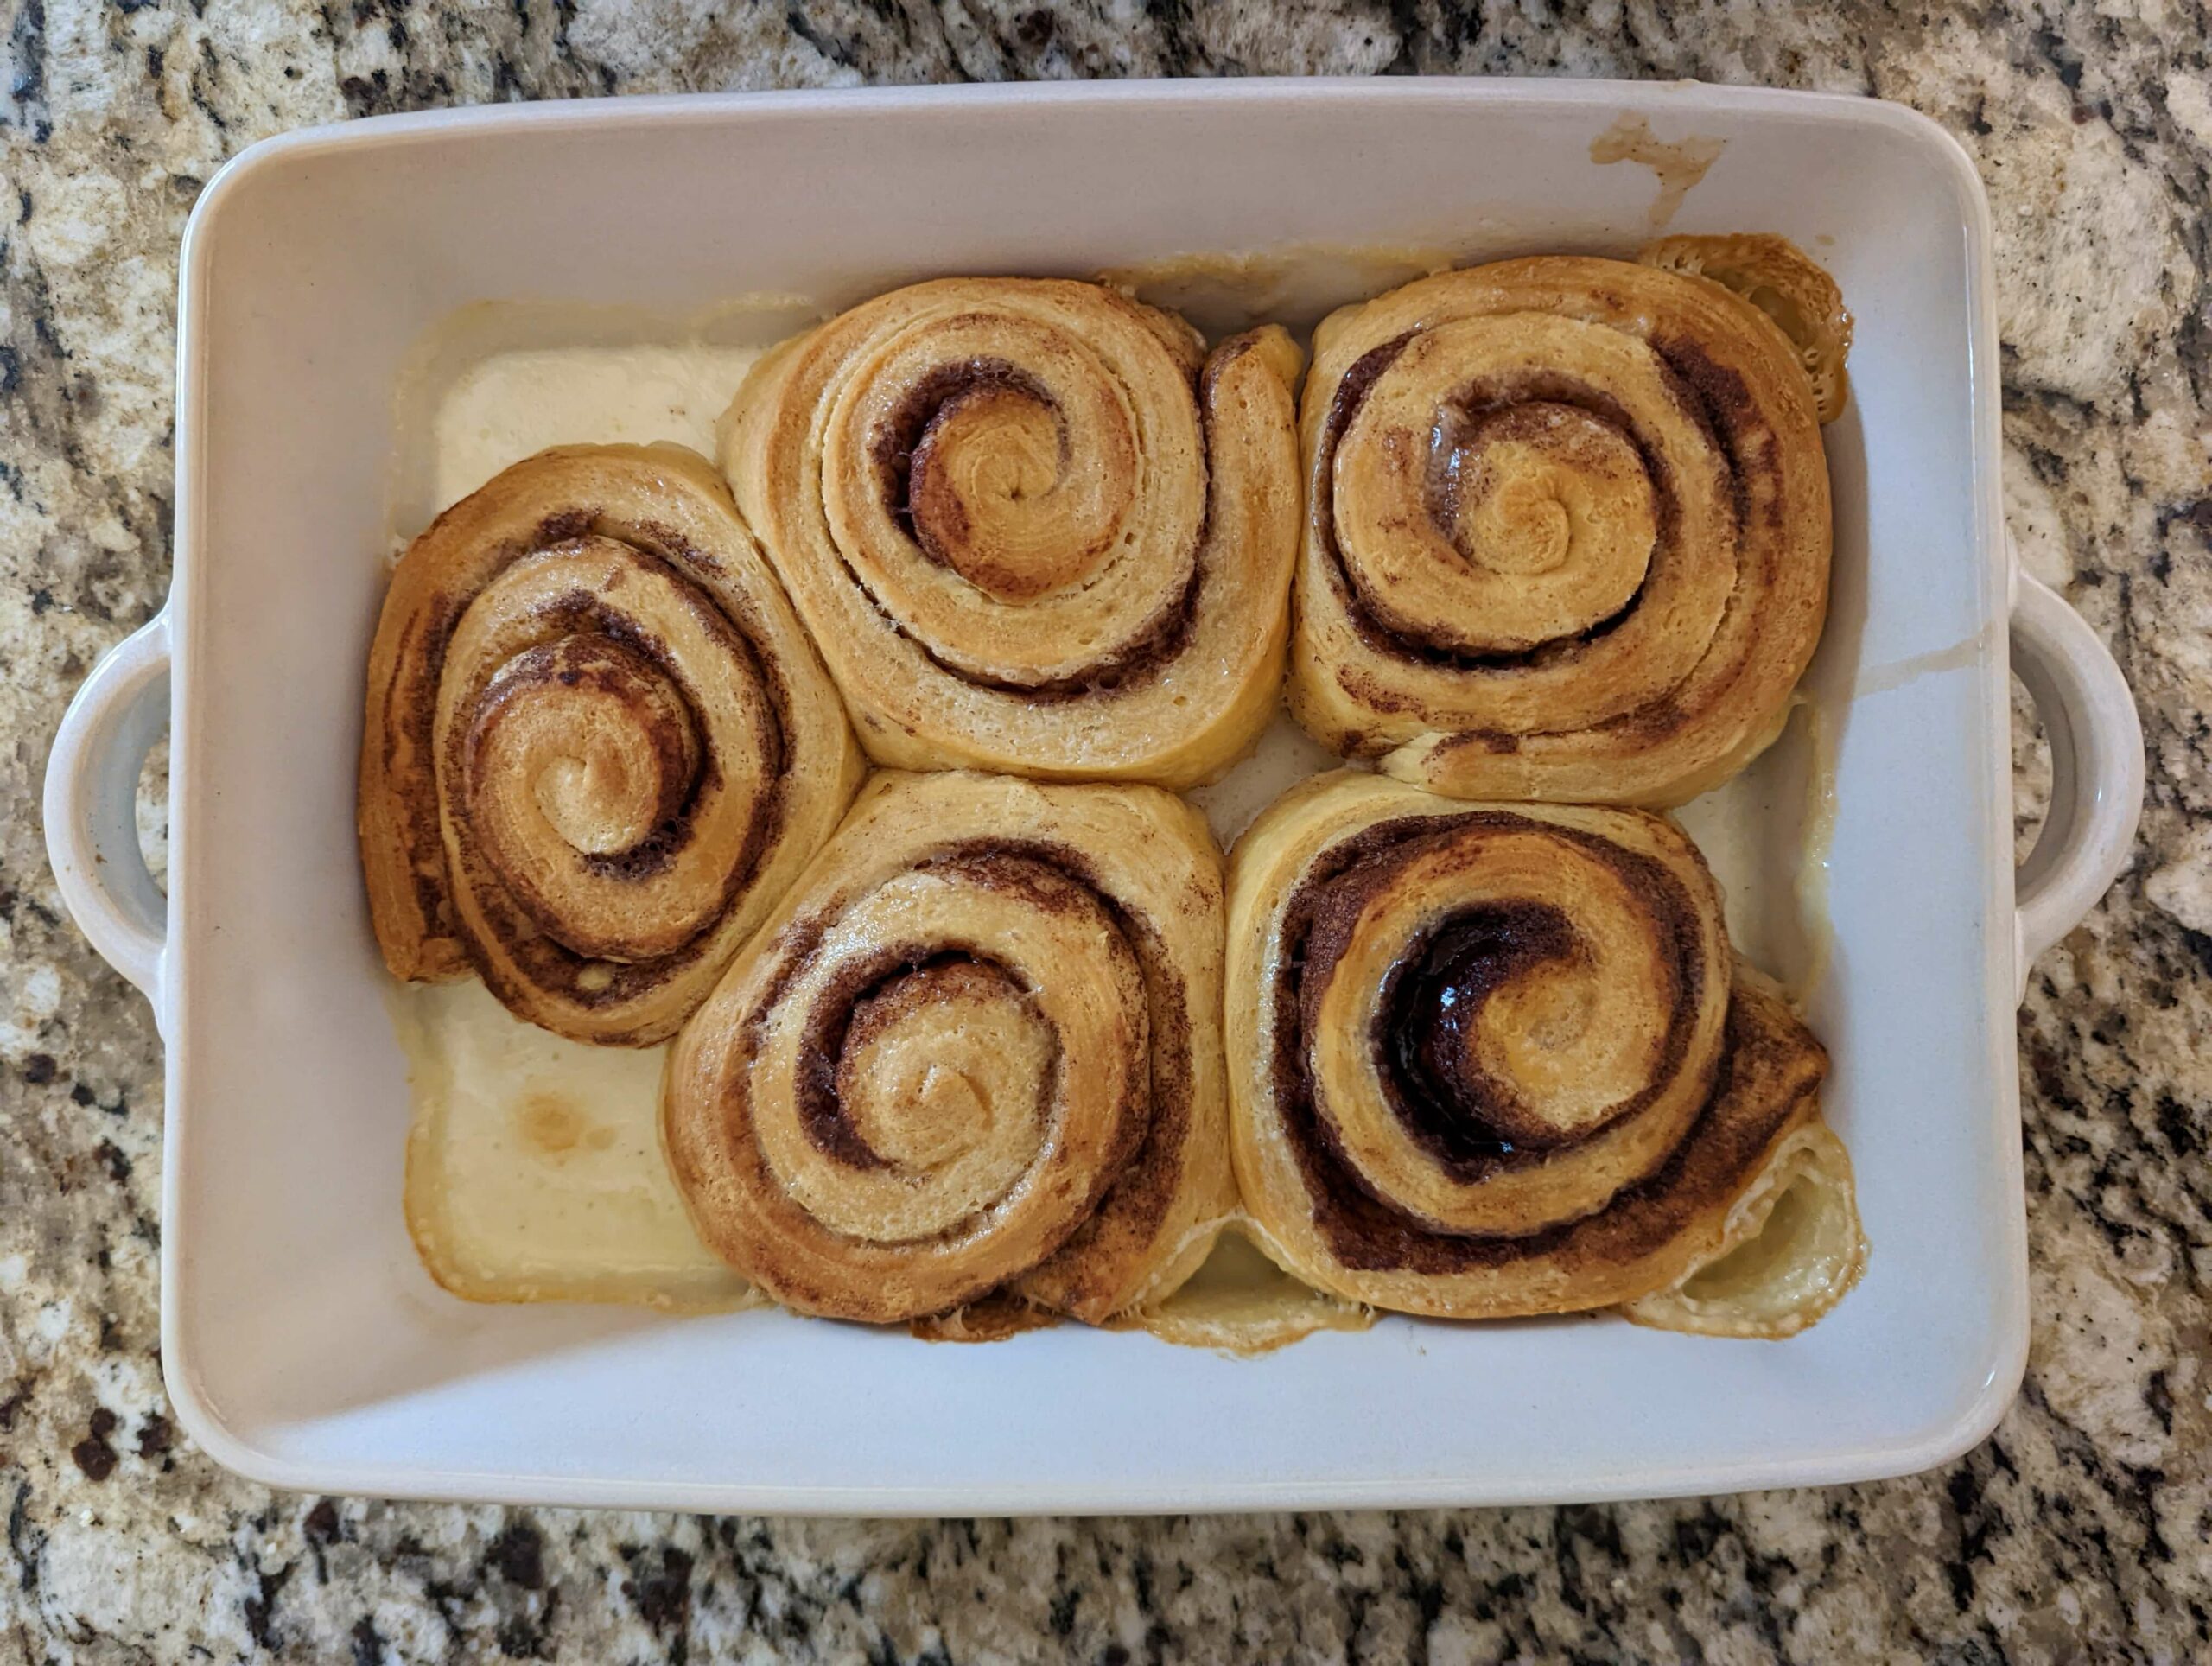 Cinnamon rolls baked in a baking pan.